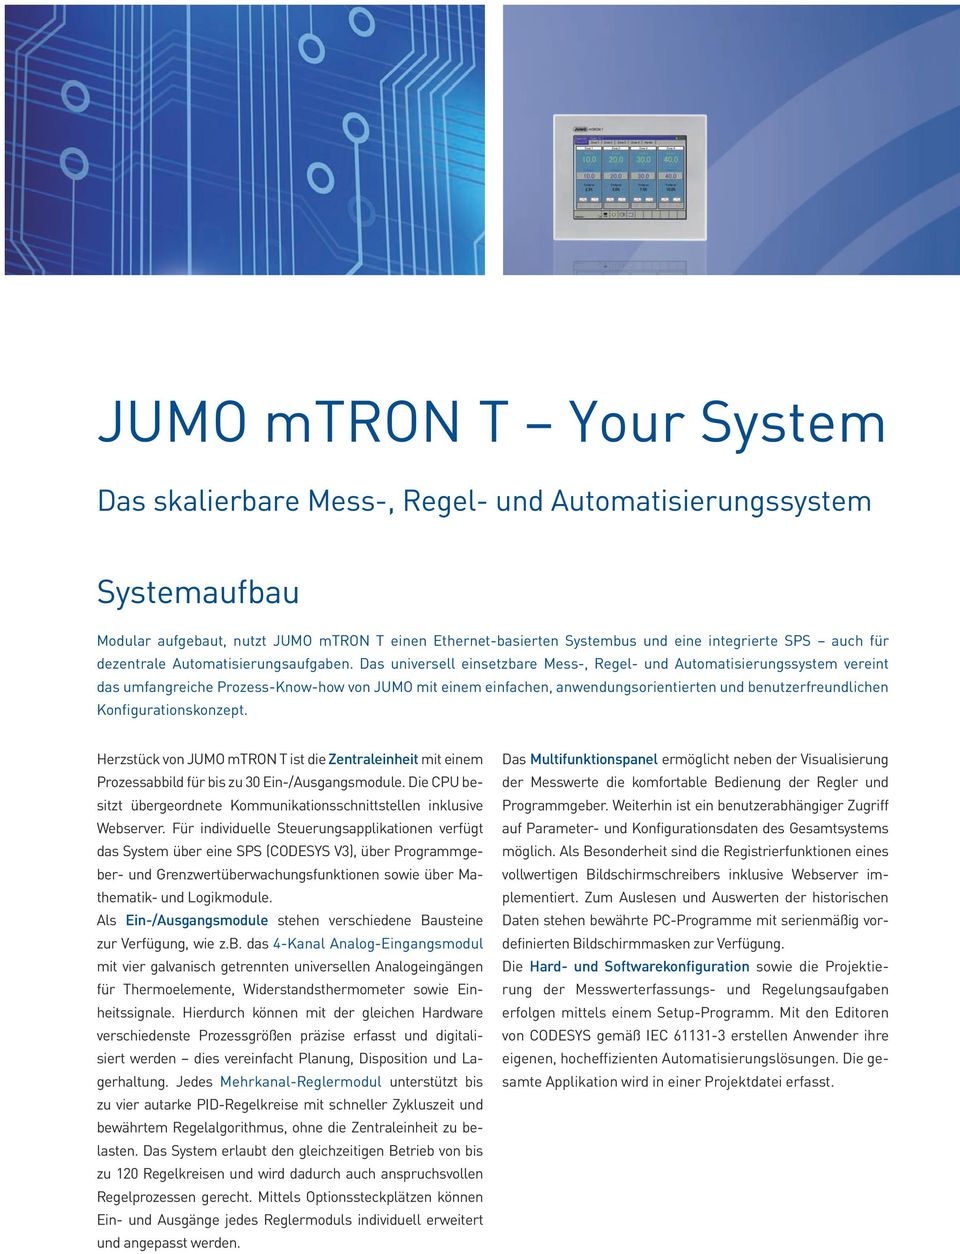 Das universell einsetzbare Mess-, Regel- und Automatisierungssystem vereint das umfangreiche Prozess-Know-how von JUMO mit einem einfachen, anwendungsorientierten und benutzerfreundlichen